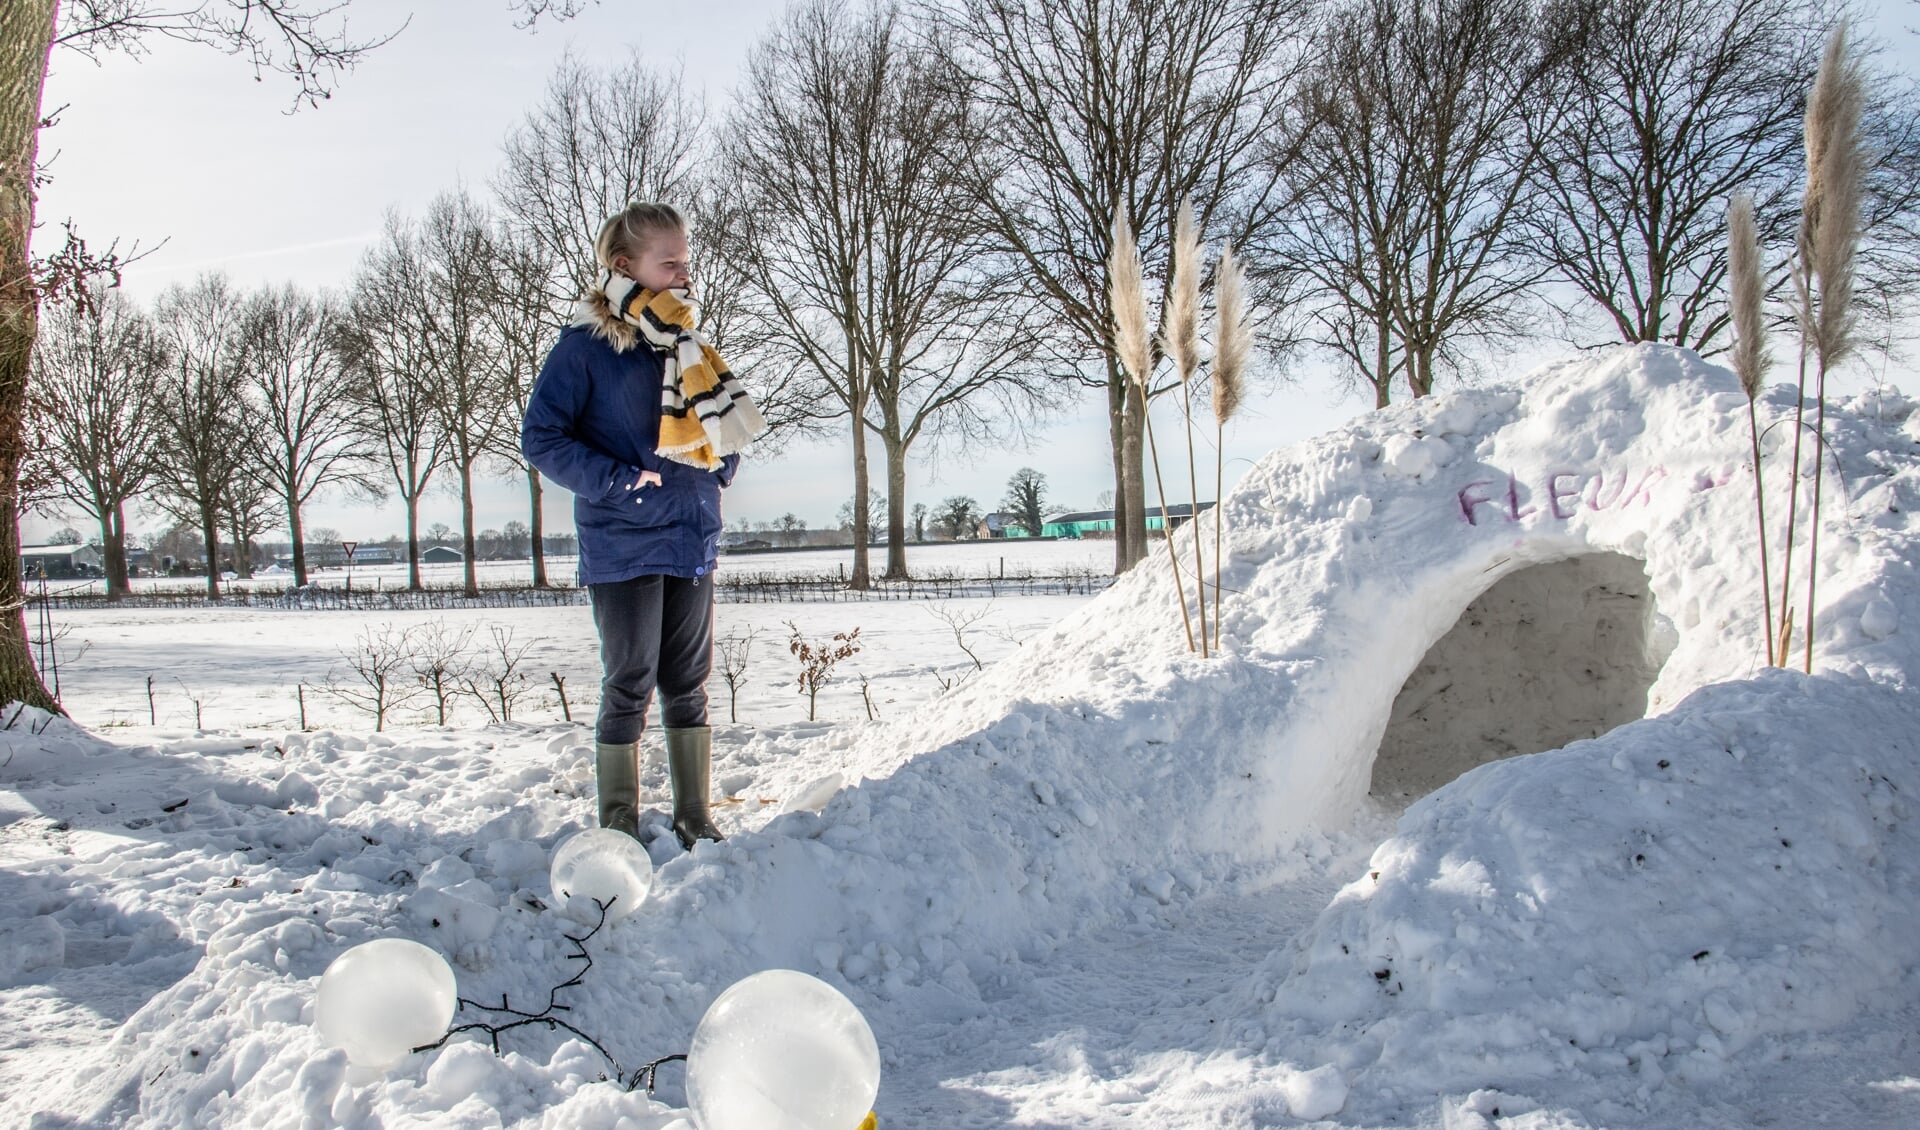 Fleur Huirne is trots op haar iglo. De ijsbollampjes verlichten het pad mooi. Foto: Achterhoekfoto.nl/Liesbeth Spaansen